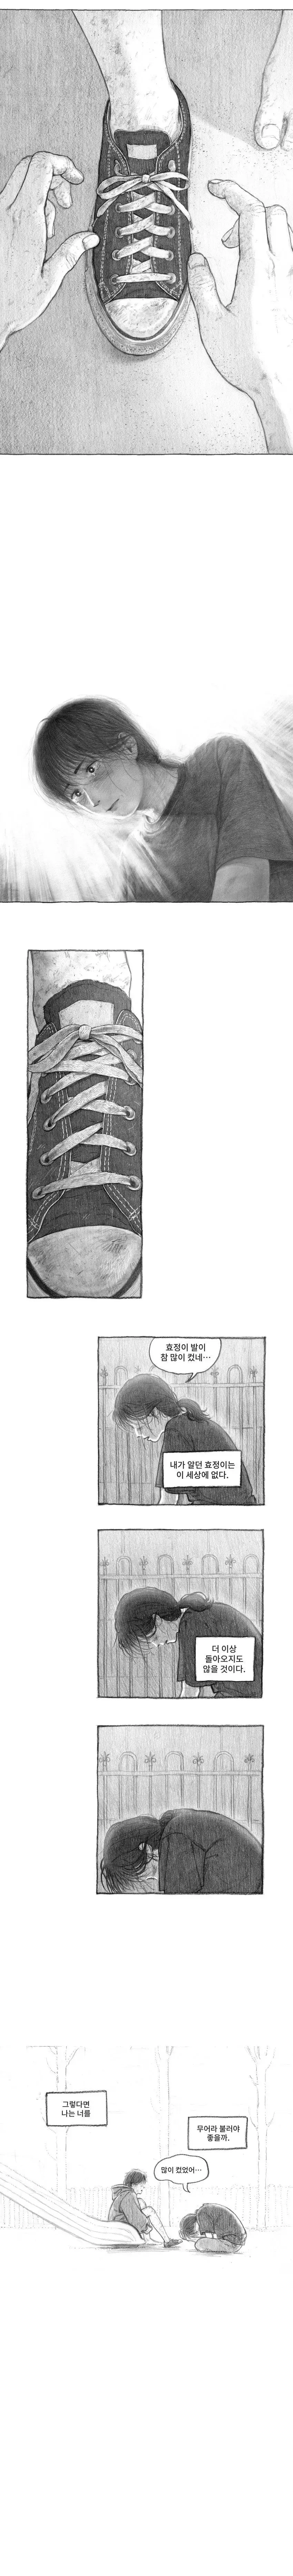 ㅆㄷ)도플갱어 | mbong.kr 엠봉